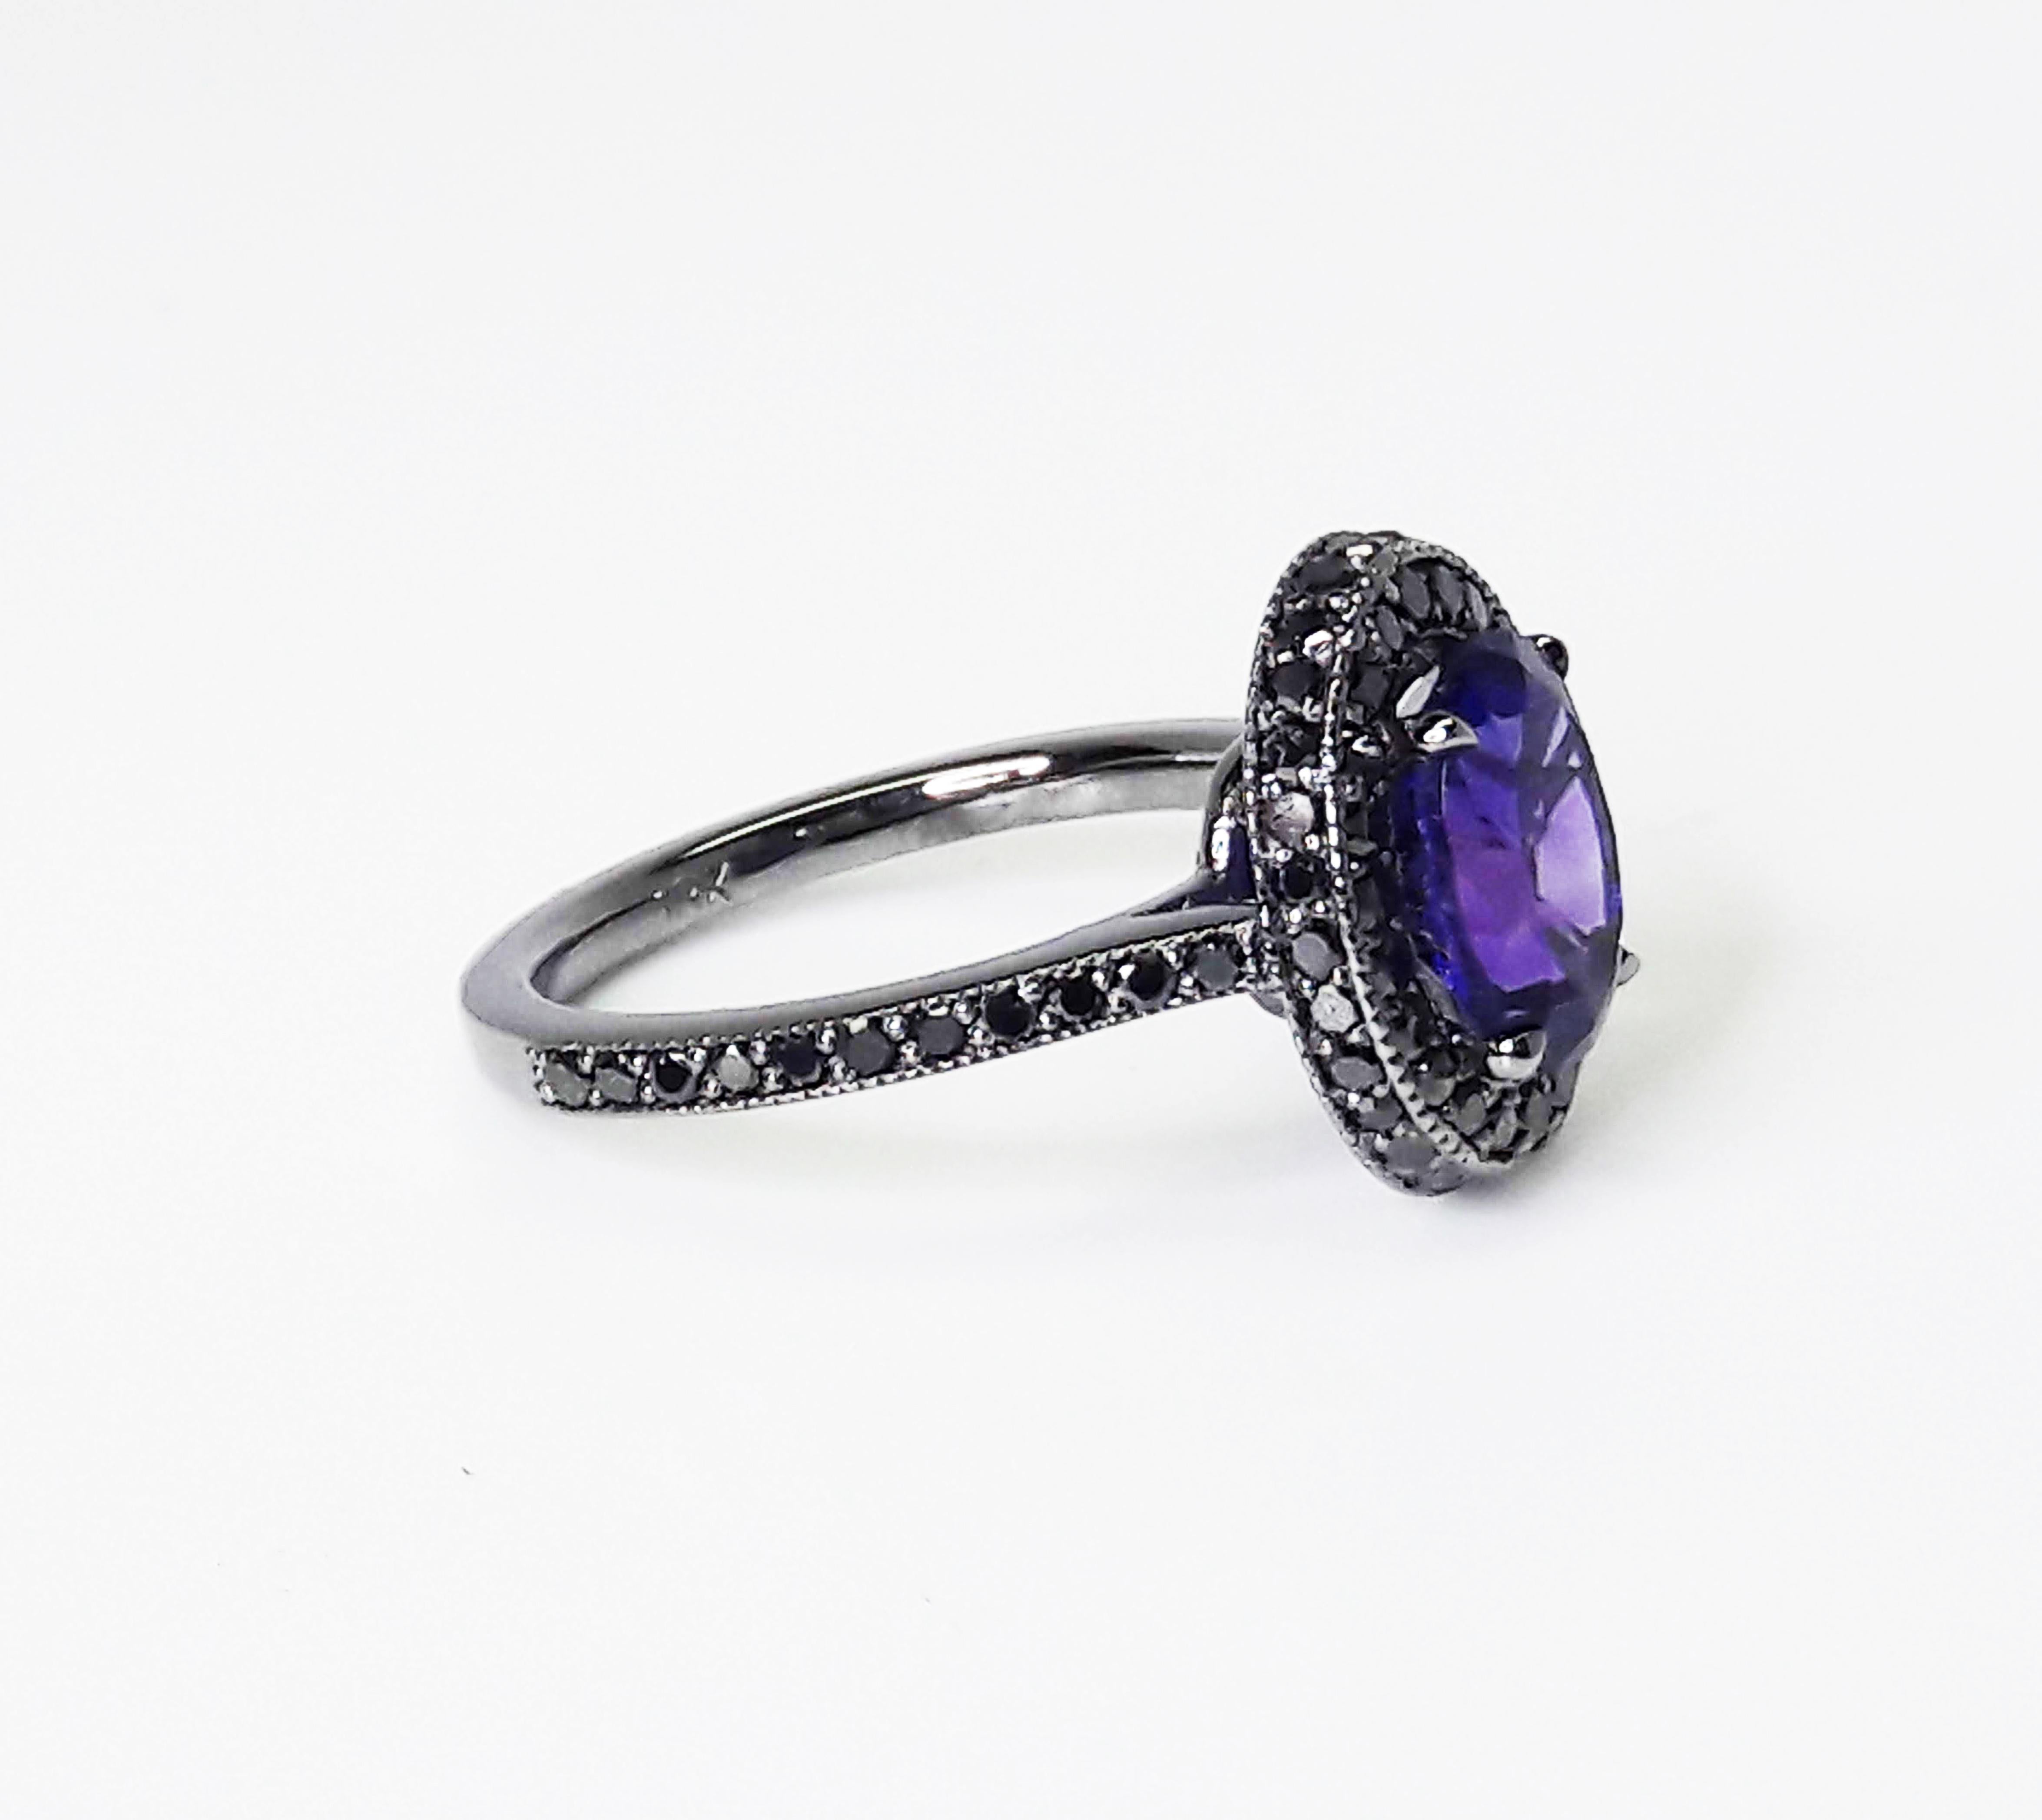 1.5 Karat natürlicher violetter Amethyst, geschmückt mit einem doppelten Halo aus schwarzen Diamanten mit einem Gesamtkaratgewicht von 0,52 Karat, eingefasst in einen handgefertigten Ring aus 18 Karat Weißgold, schwarz rhodiniert.

Handgefertigt in